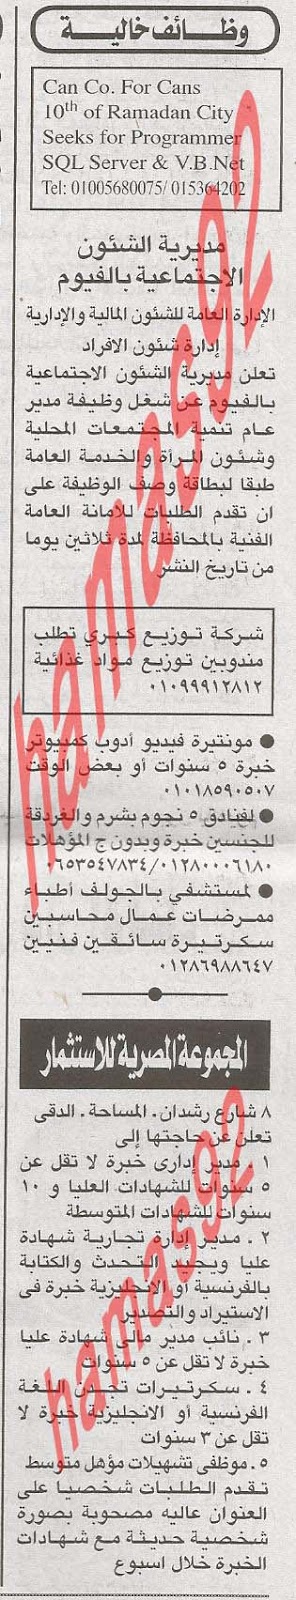 وظائف خالية من جريدة الاهرام المصرية اليوم الاحد 24/2/2013 %D8%A7%D9%84%D8%A7%D9%87%D8%B1%D8%A7%D9%85+1